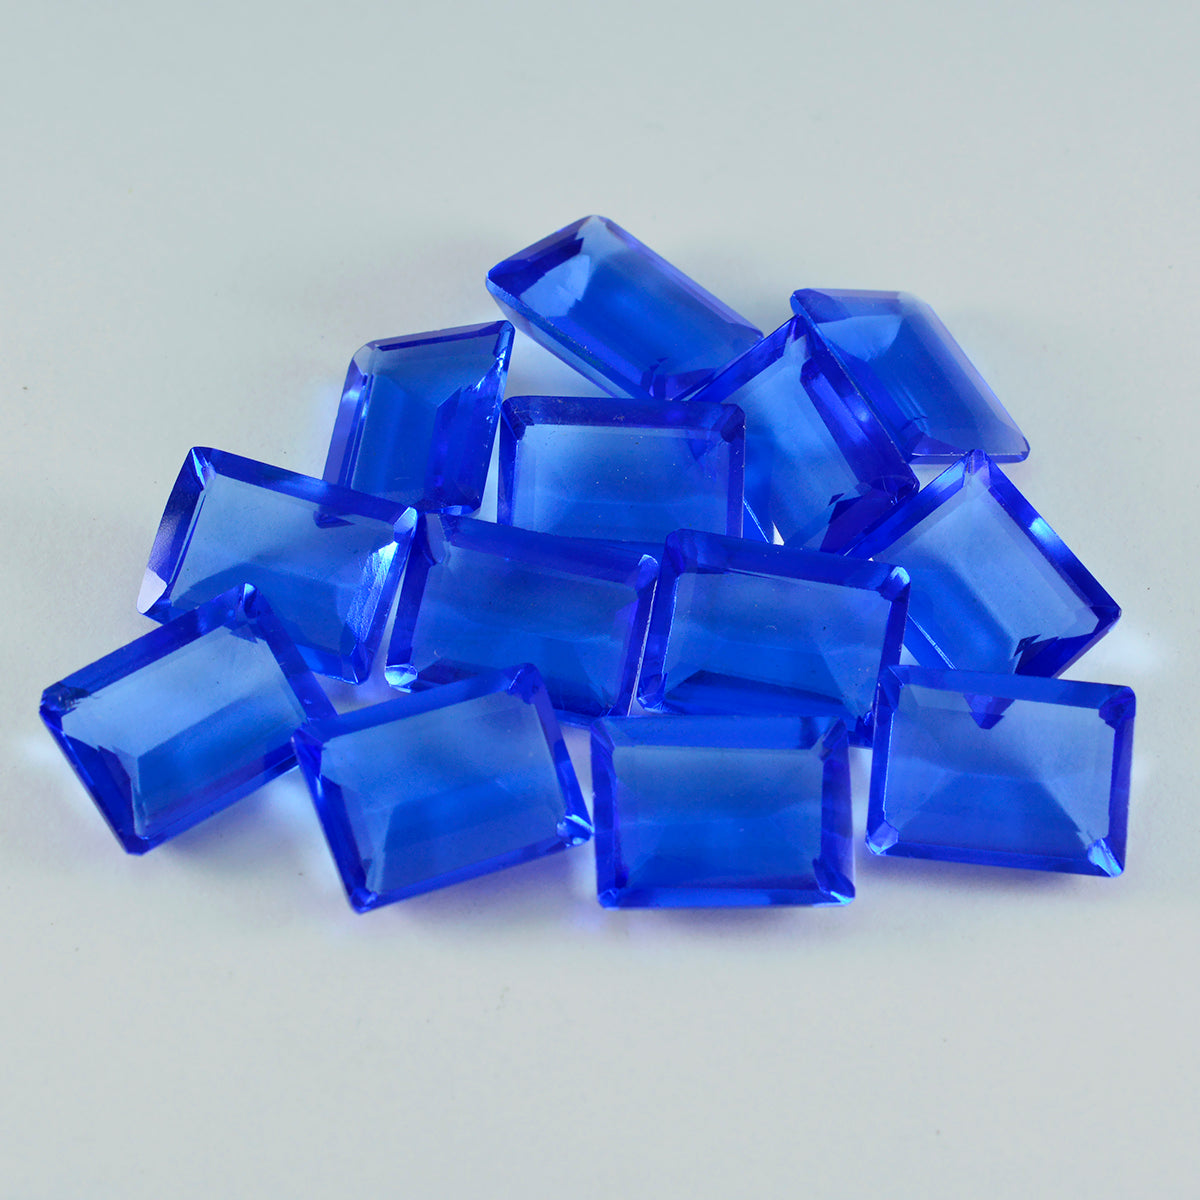 riyogems 1 шт. синий сапфир cz граненый 9x11 мм восьмиугольной формы, драгоценный камень удивительного качества, свободный драгоценный камень